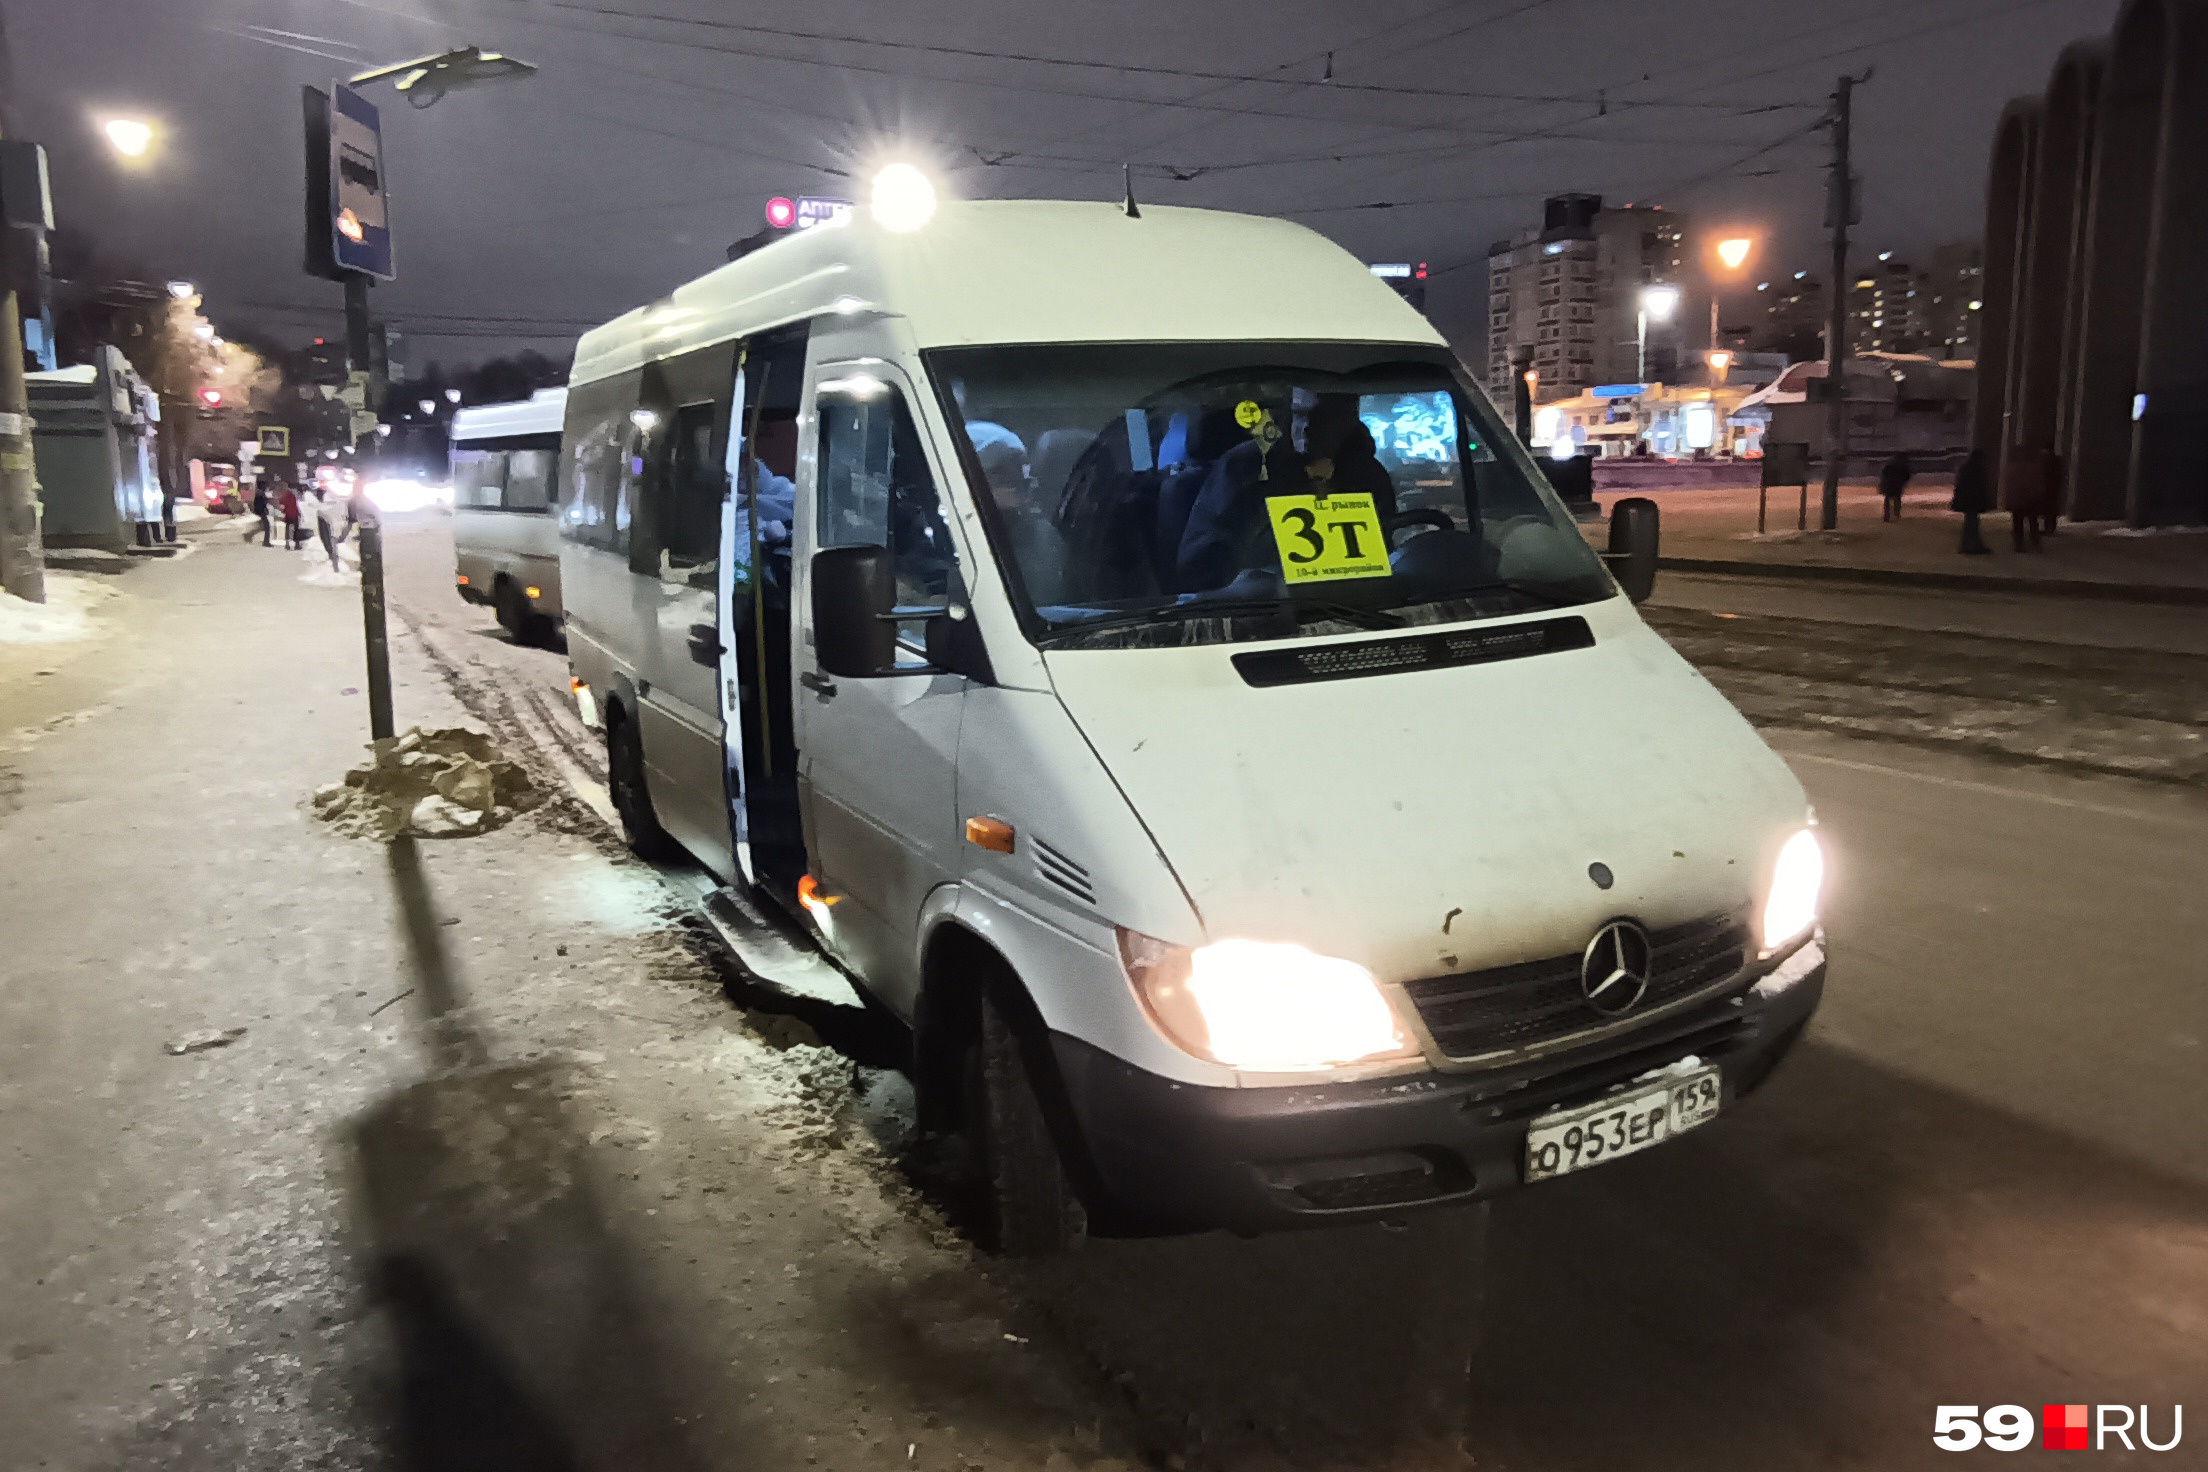 Вечером 9 февраля на бывшем маршруте 3т нелегально работал как минимум один микроавтобус